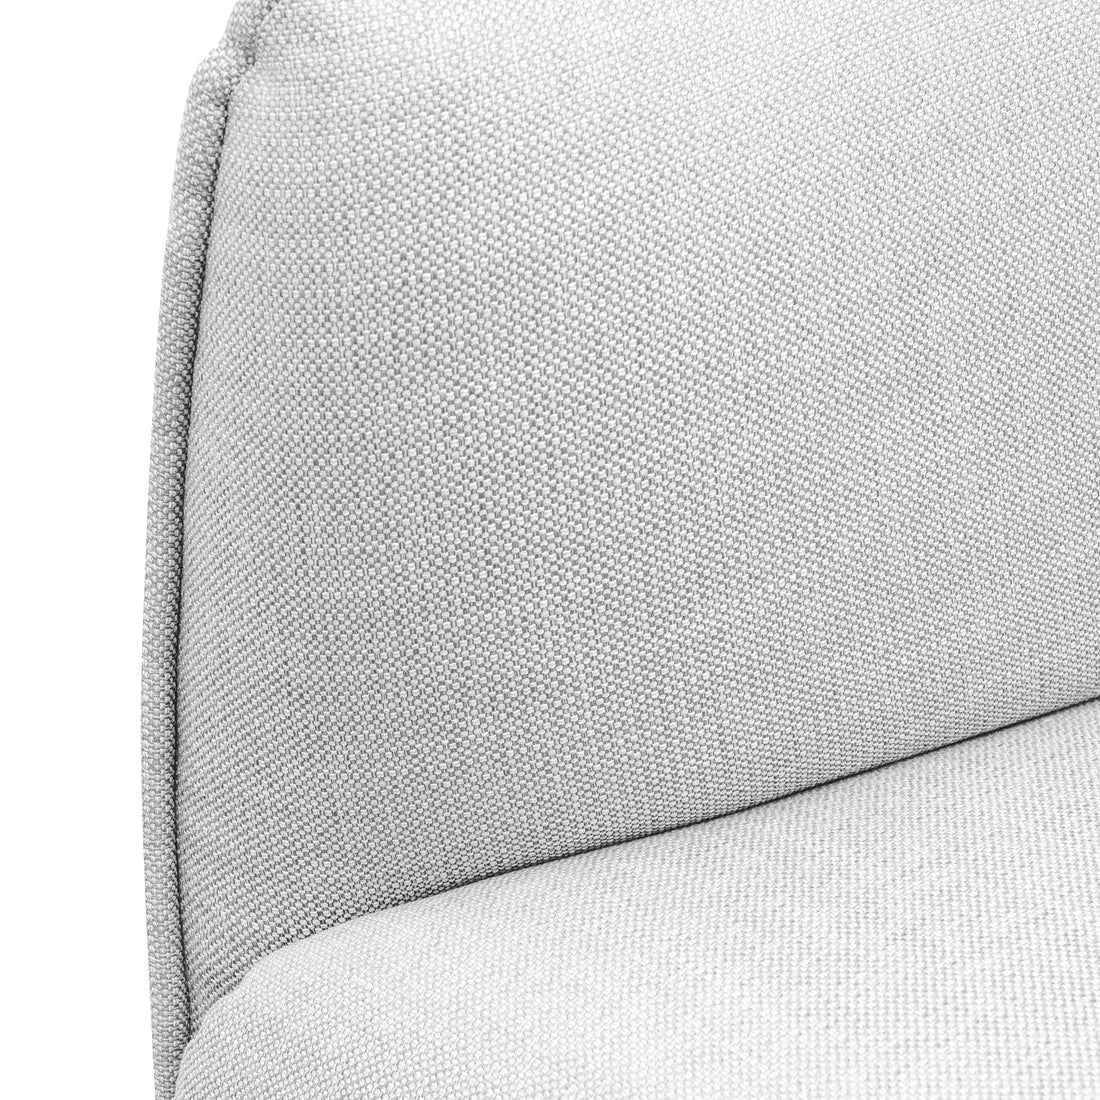 3 Seater Fabric Sofa - Light Texture Grey